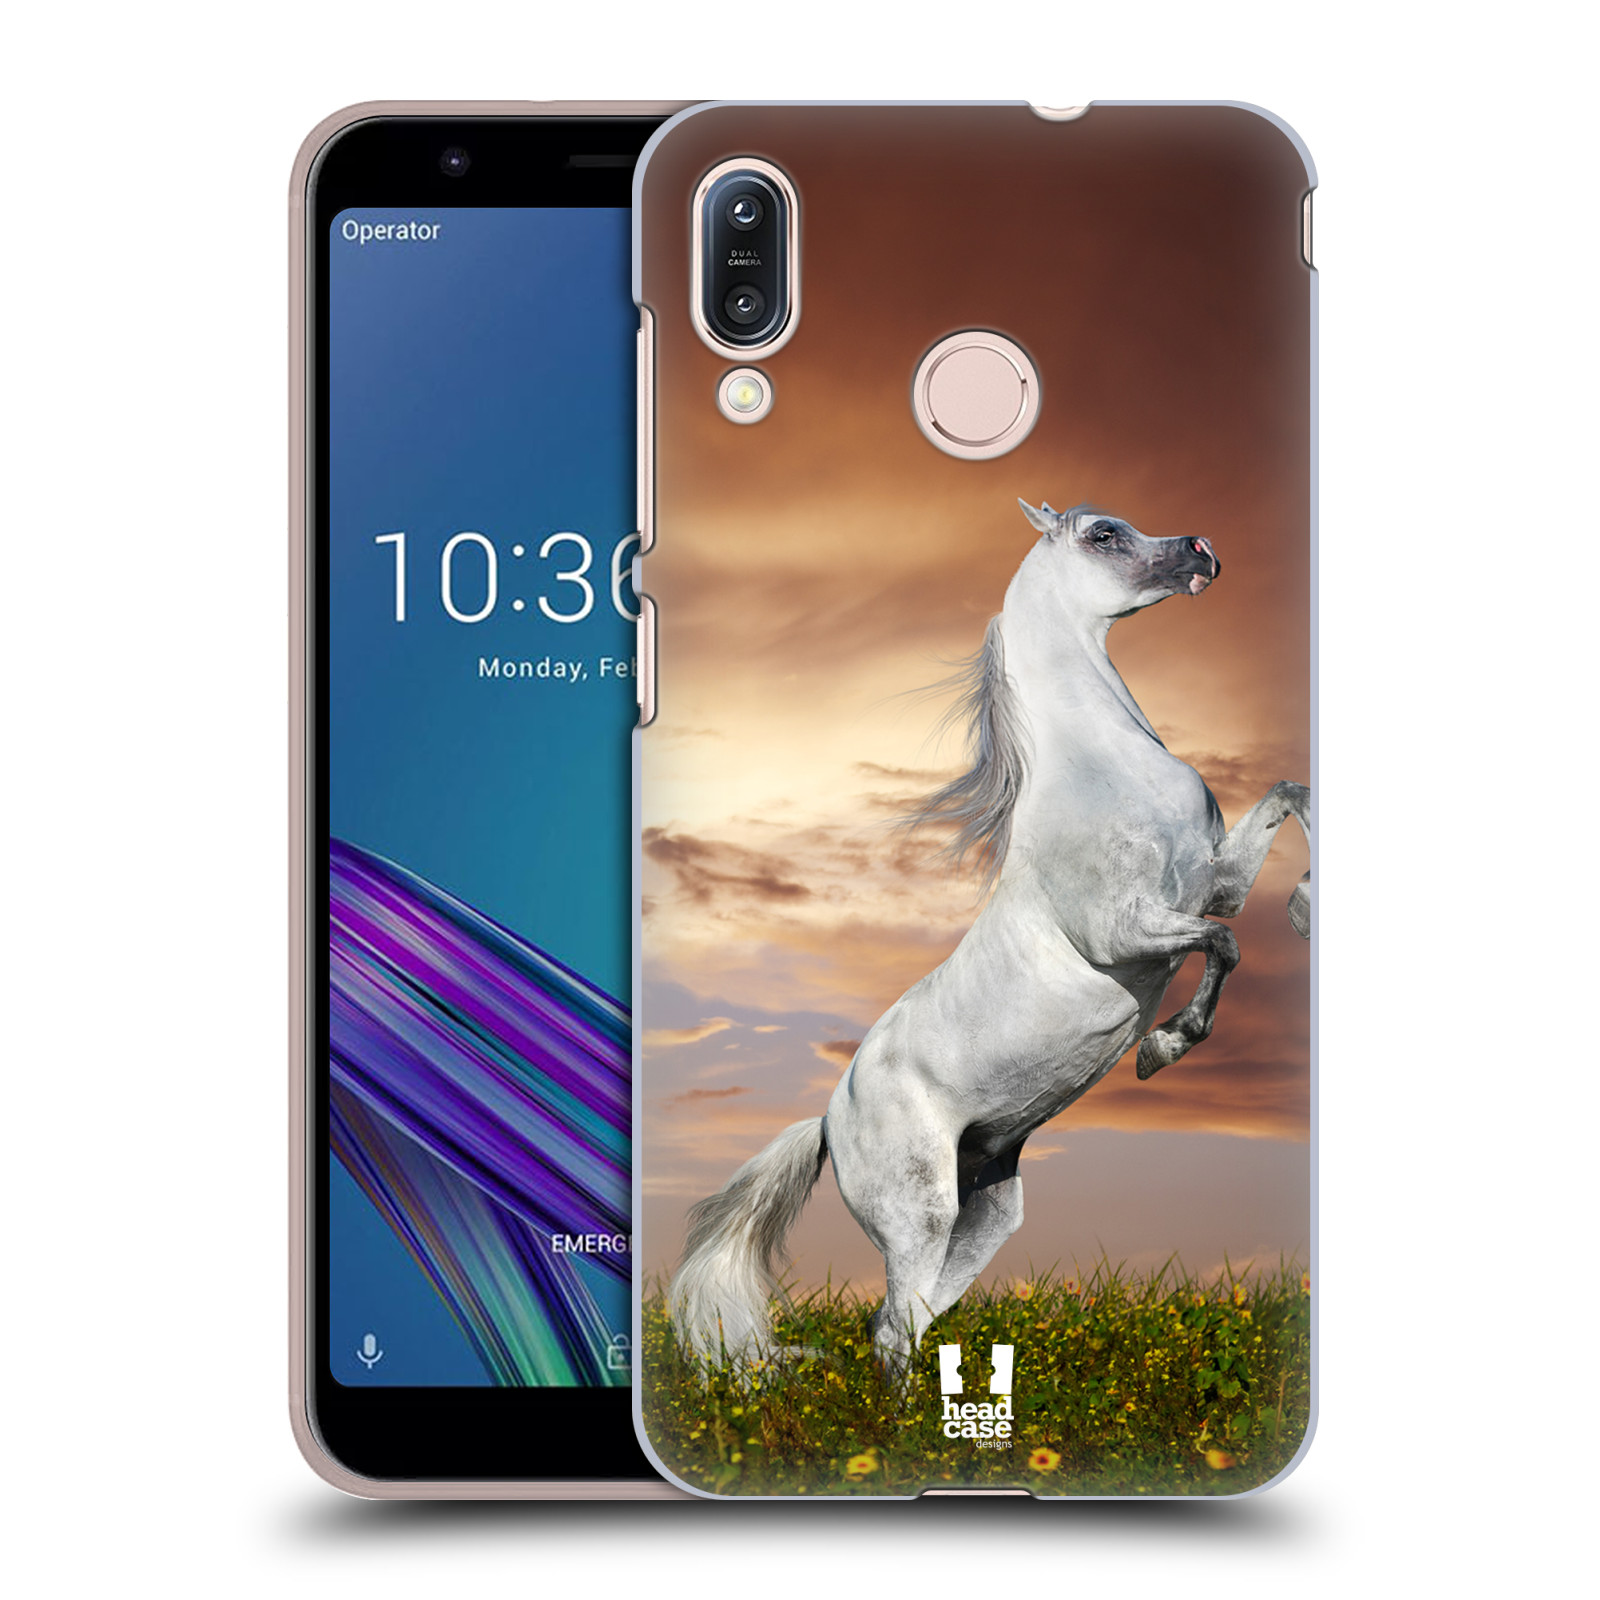 Zadní obal pro mobil Asus Zenfone Max (M1) ZB555KL - HEAD CASE - Svět zvířat divoký kůň